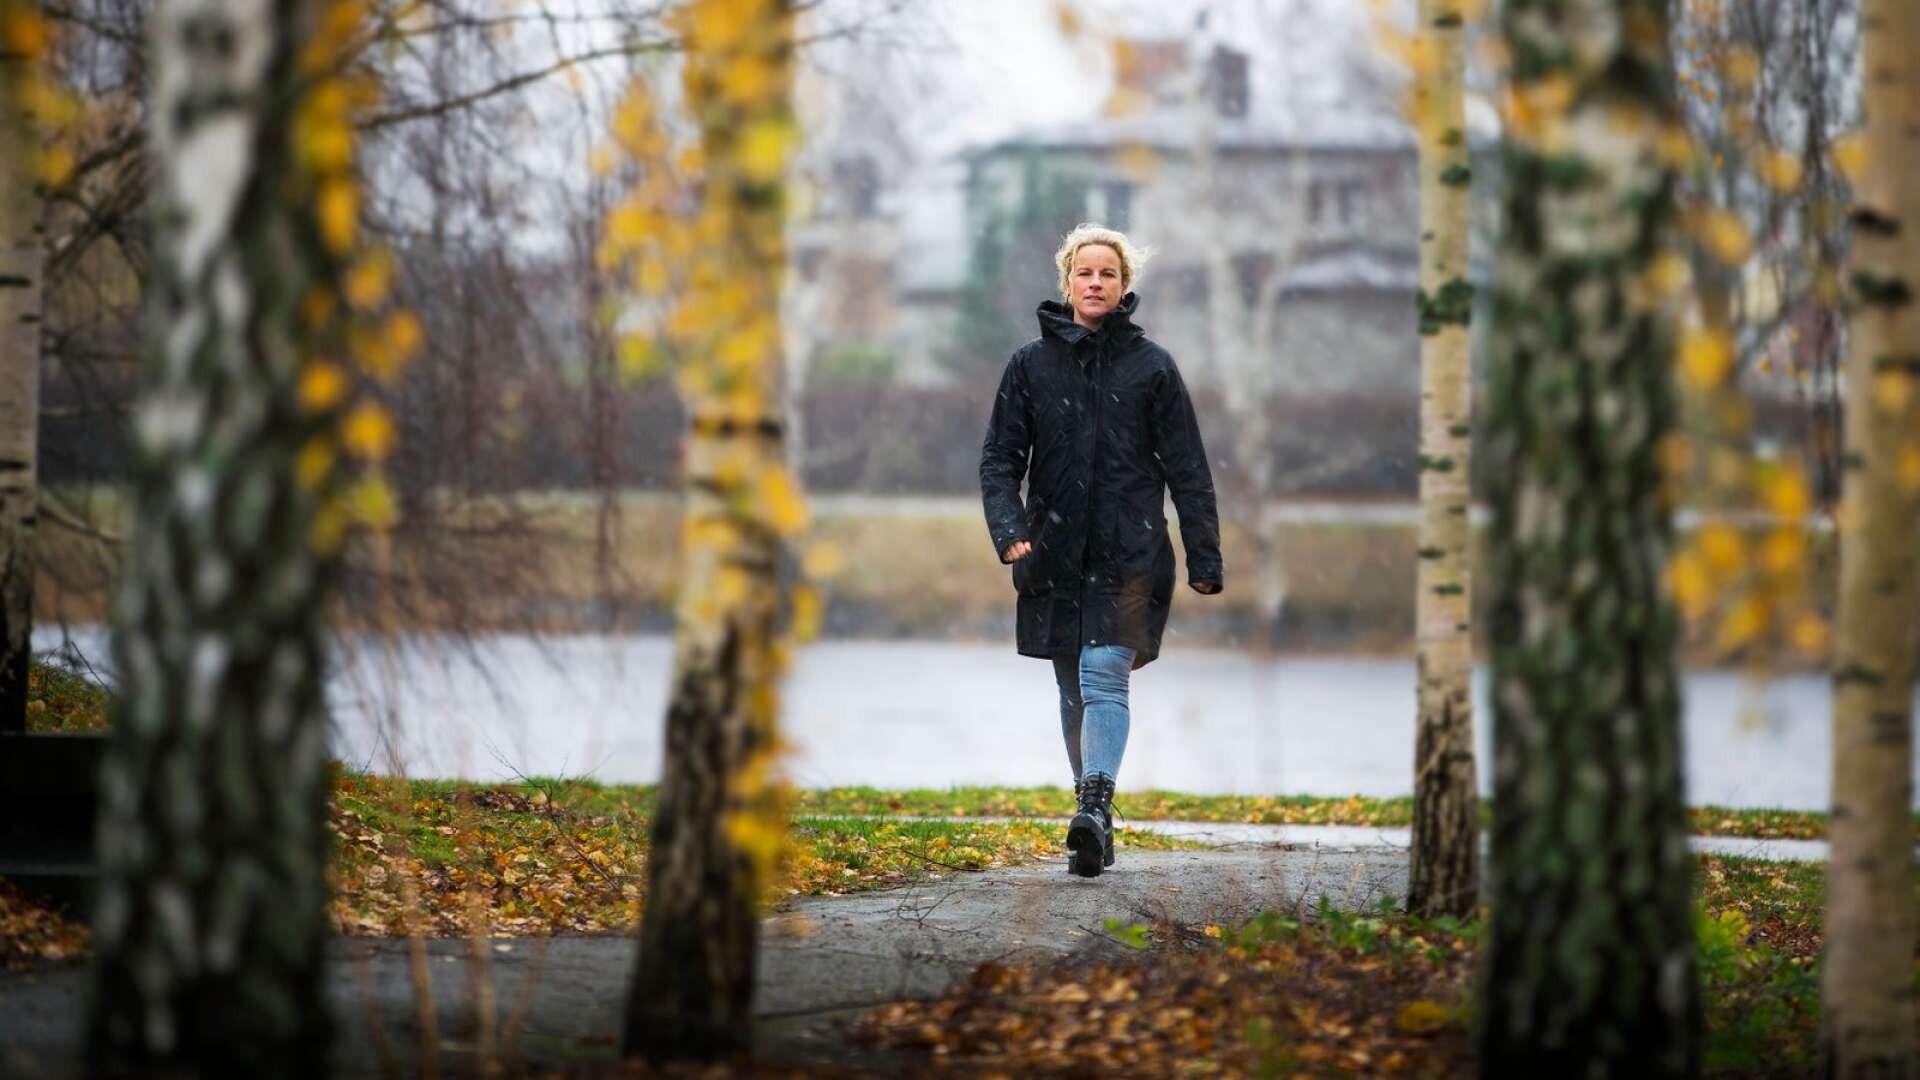 Från Hisingen till Sandgrundsudden - Kristin Idskog är Karlstads kommuns nya kultur- och fritidsdirektör. Hon är hemvändare i Karlstad efter 17 år på annan ort. &quot;Man har nog alltid ett hjärta kvar här på något sätt och en liten hemlängtan&quot;, säger hon.